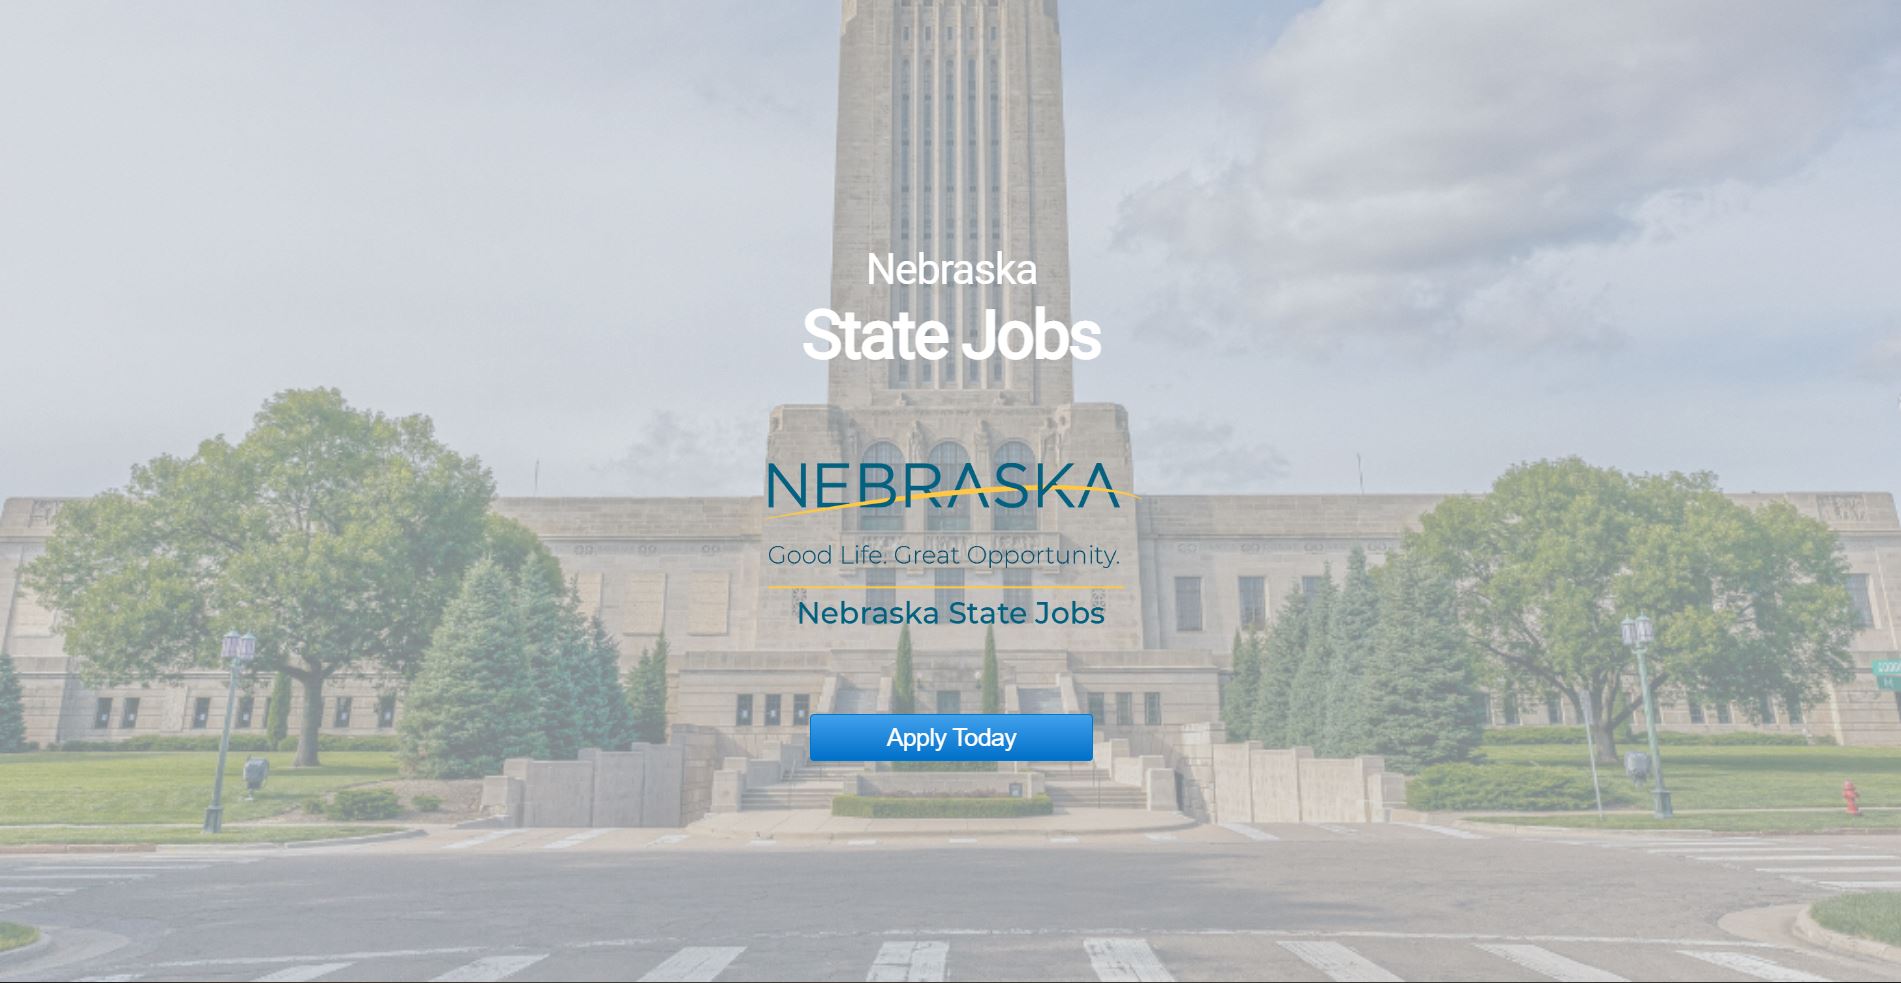 Nebraska State jobs site